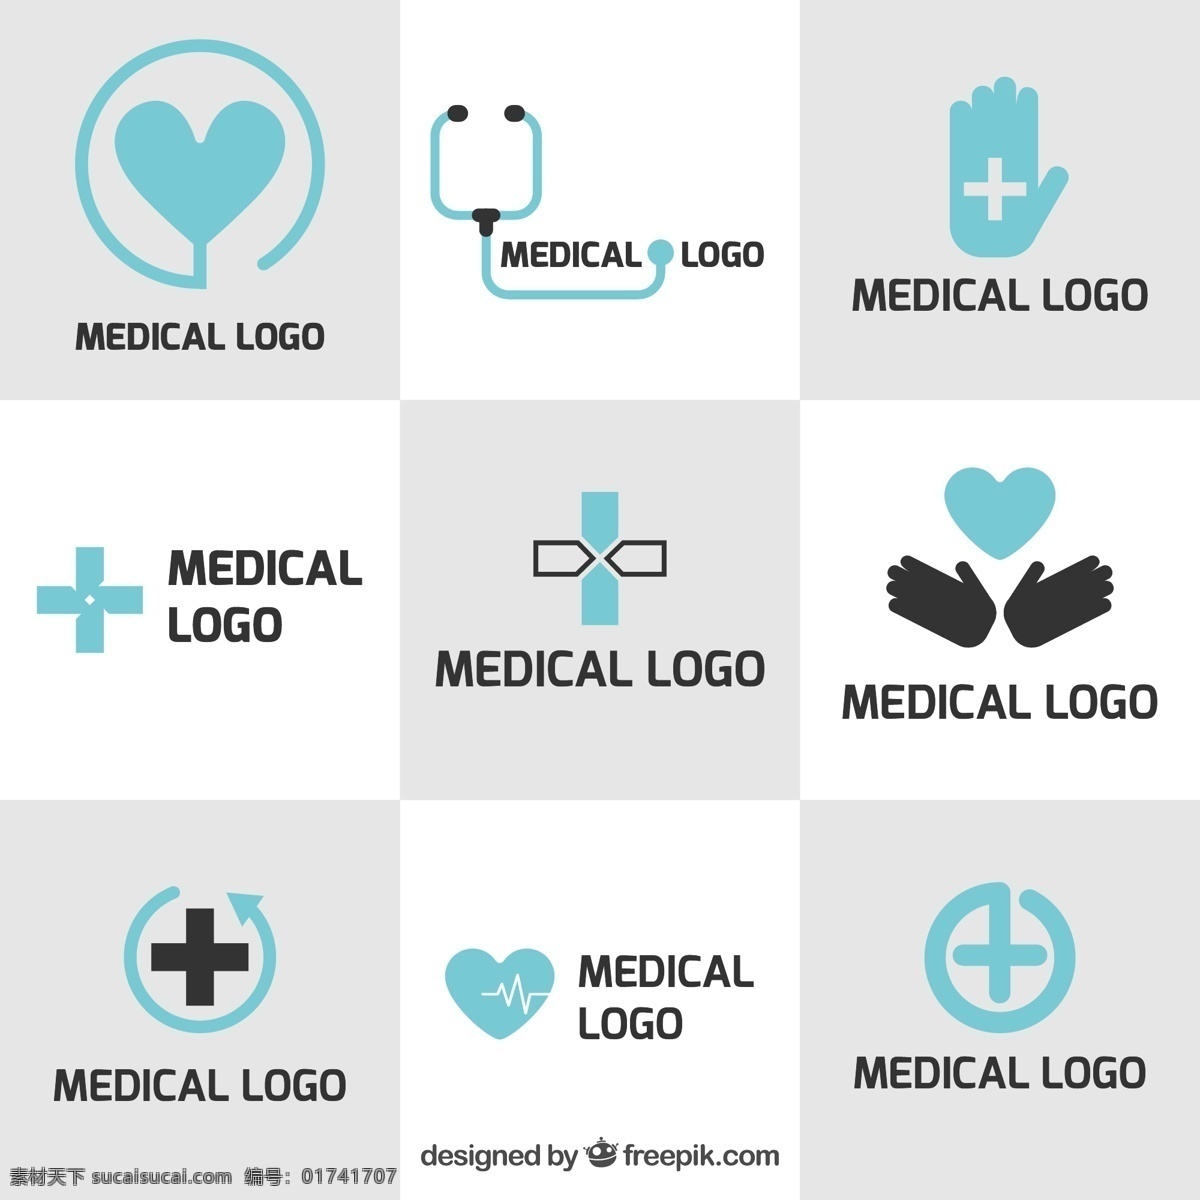 平面设计 中 医学 标志 模板 标识 商业 心脏 手 医疗 健康 医生 平面 跨 企业 医药 公司 品牌 企业形象 象征 身份 白色